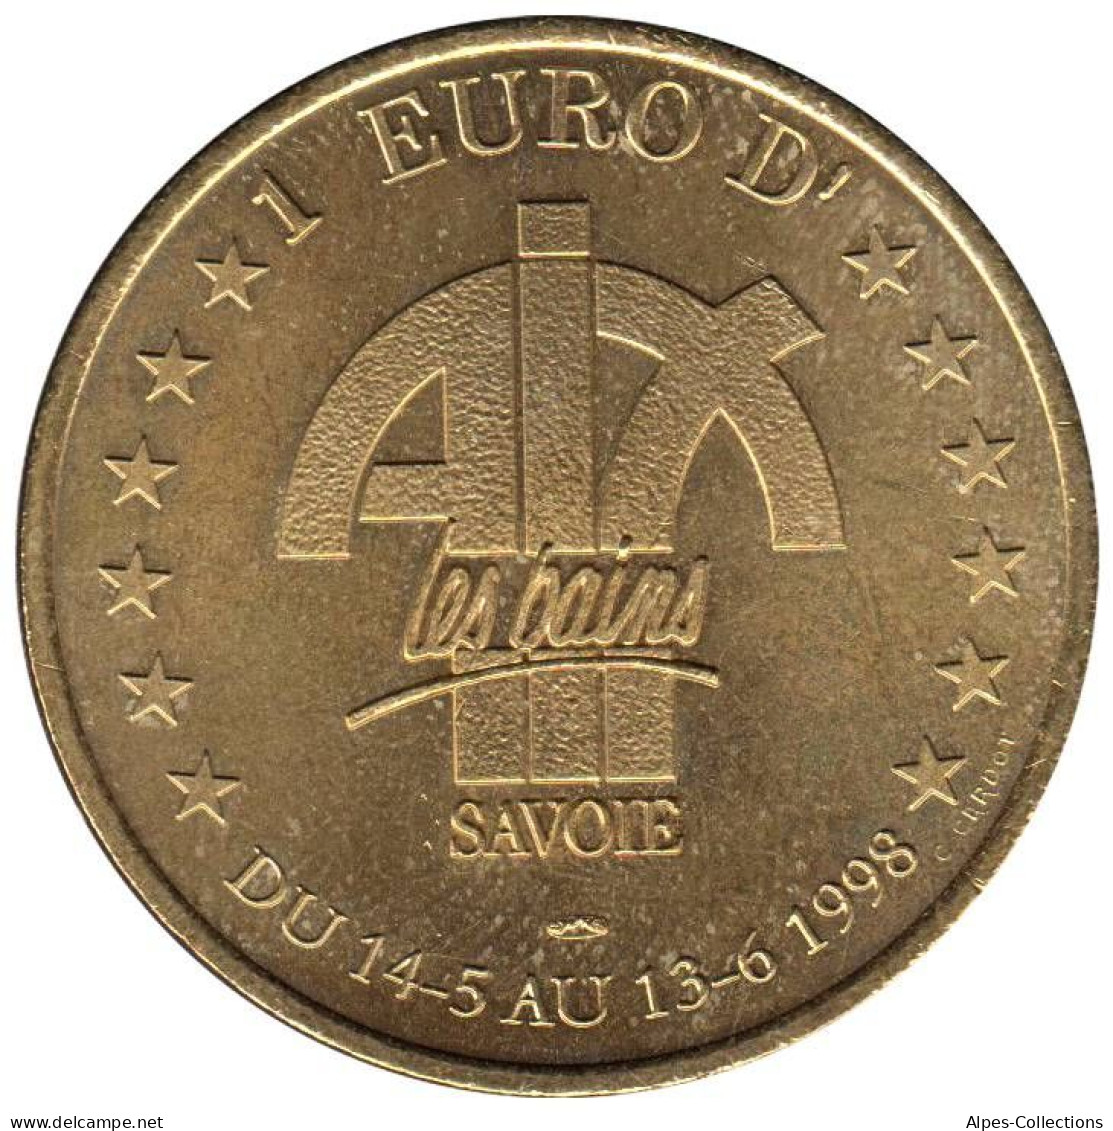 AIX LES BAINS - EU0010.2 - 1 EURO DES VILLES - Réf: T418 - 1998 - Euro Delle Città